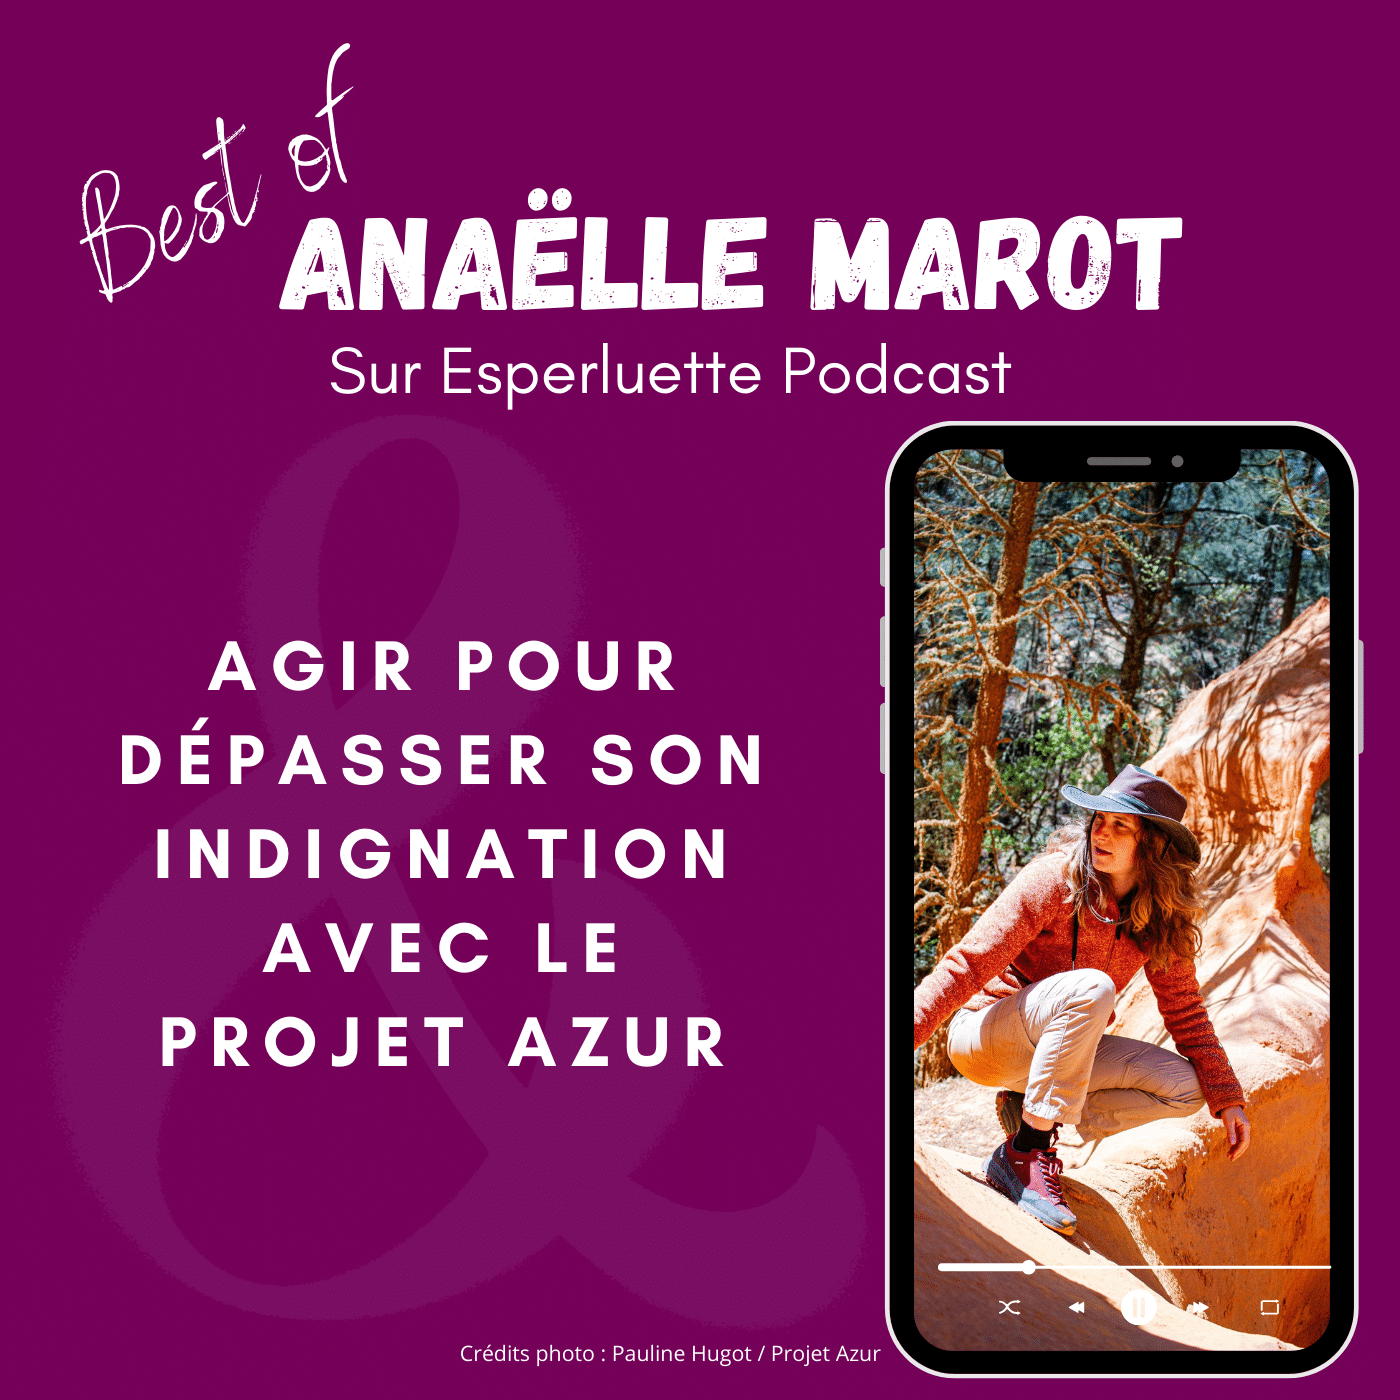 Anaëlle Marot & le projet Azur, agir pour dépasser son indignation